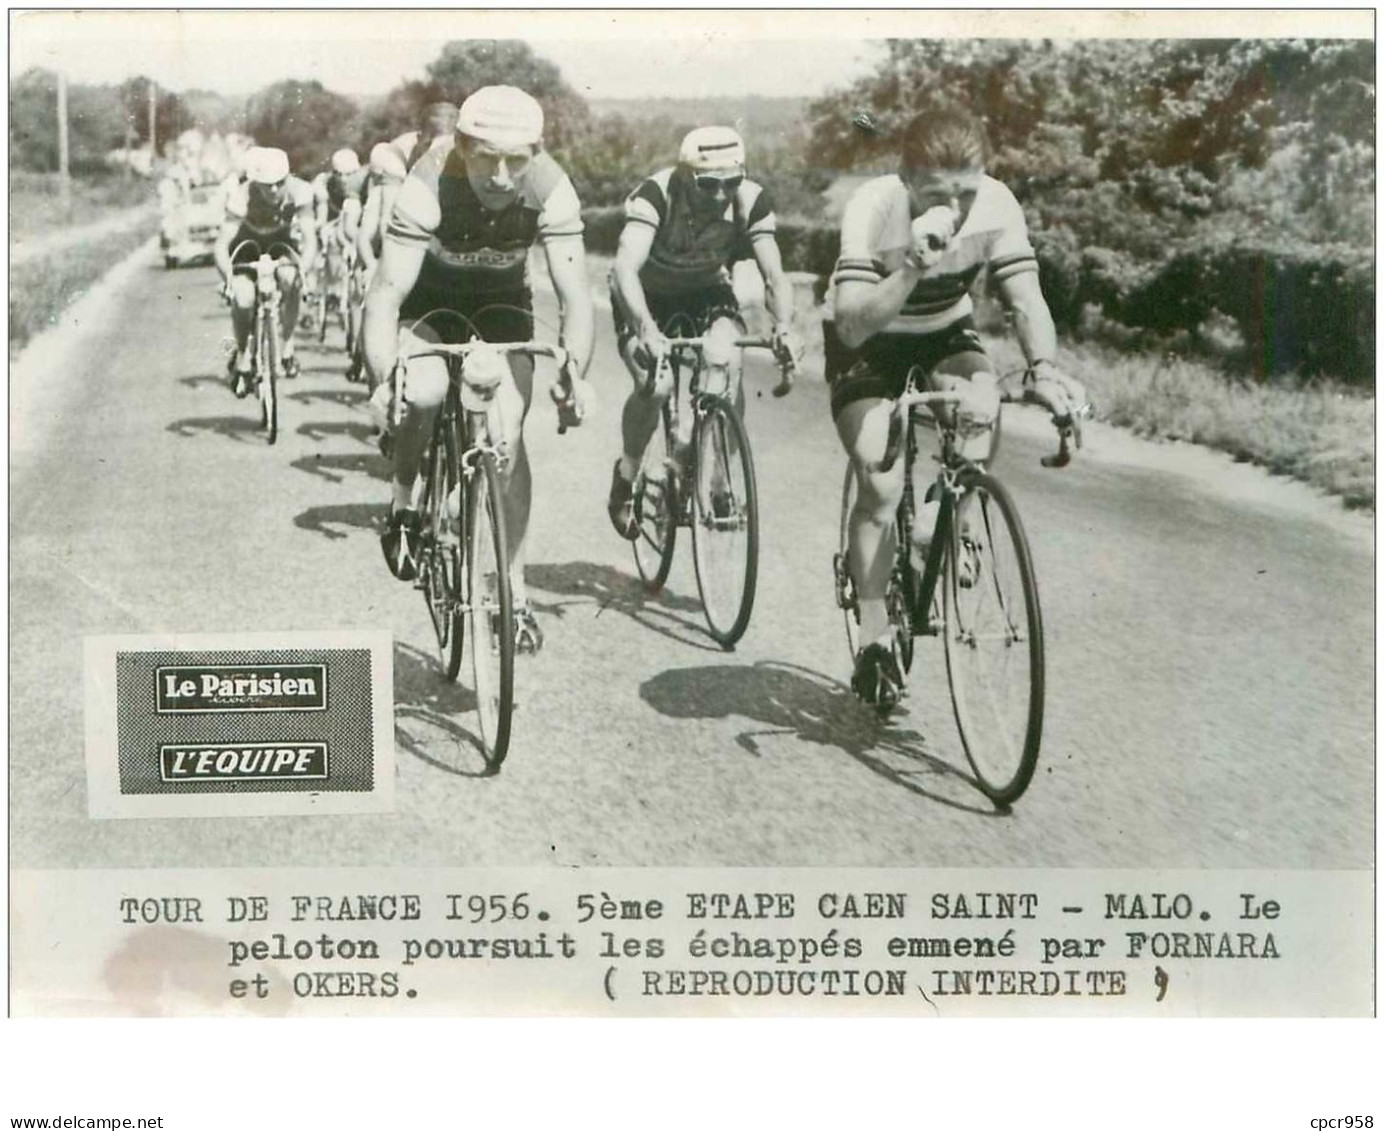 PHOTO DE PRESSE ORIGINALE TOUR DE FRANCE 1956.20X15.5eme ETAPE CAEN ST MALO.LE PELOTON ...FORNARA ET OKERS.n°18662 - Cycling